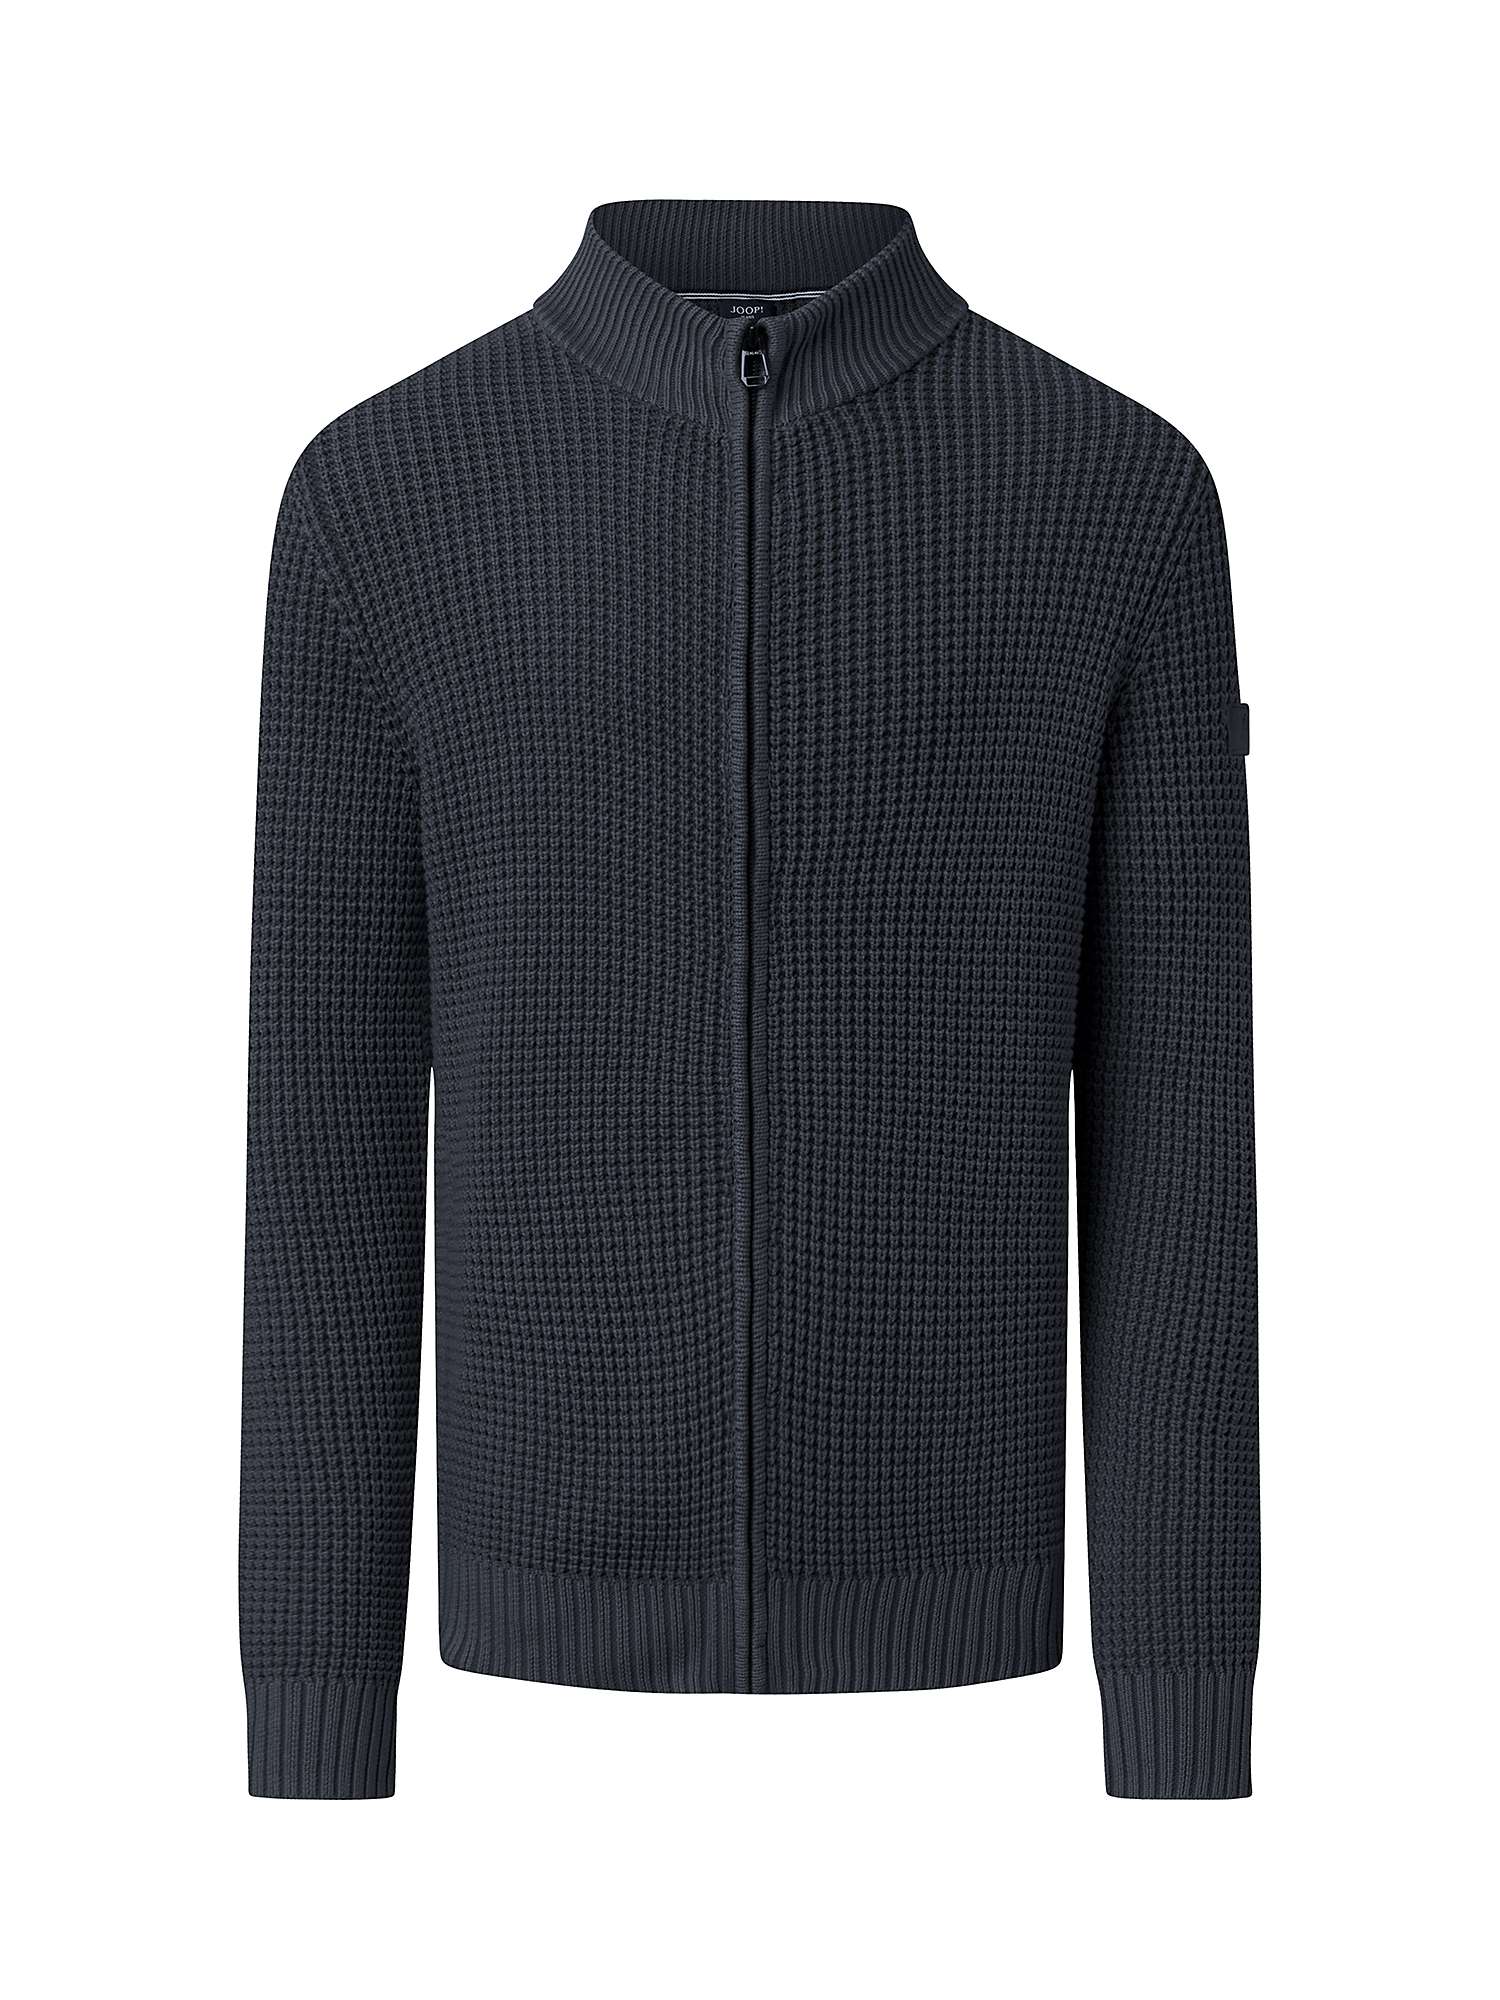 JOOP! Hardi Knitwear Zip Through Jacket, Dark Blue at John Lewis & Partners